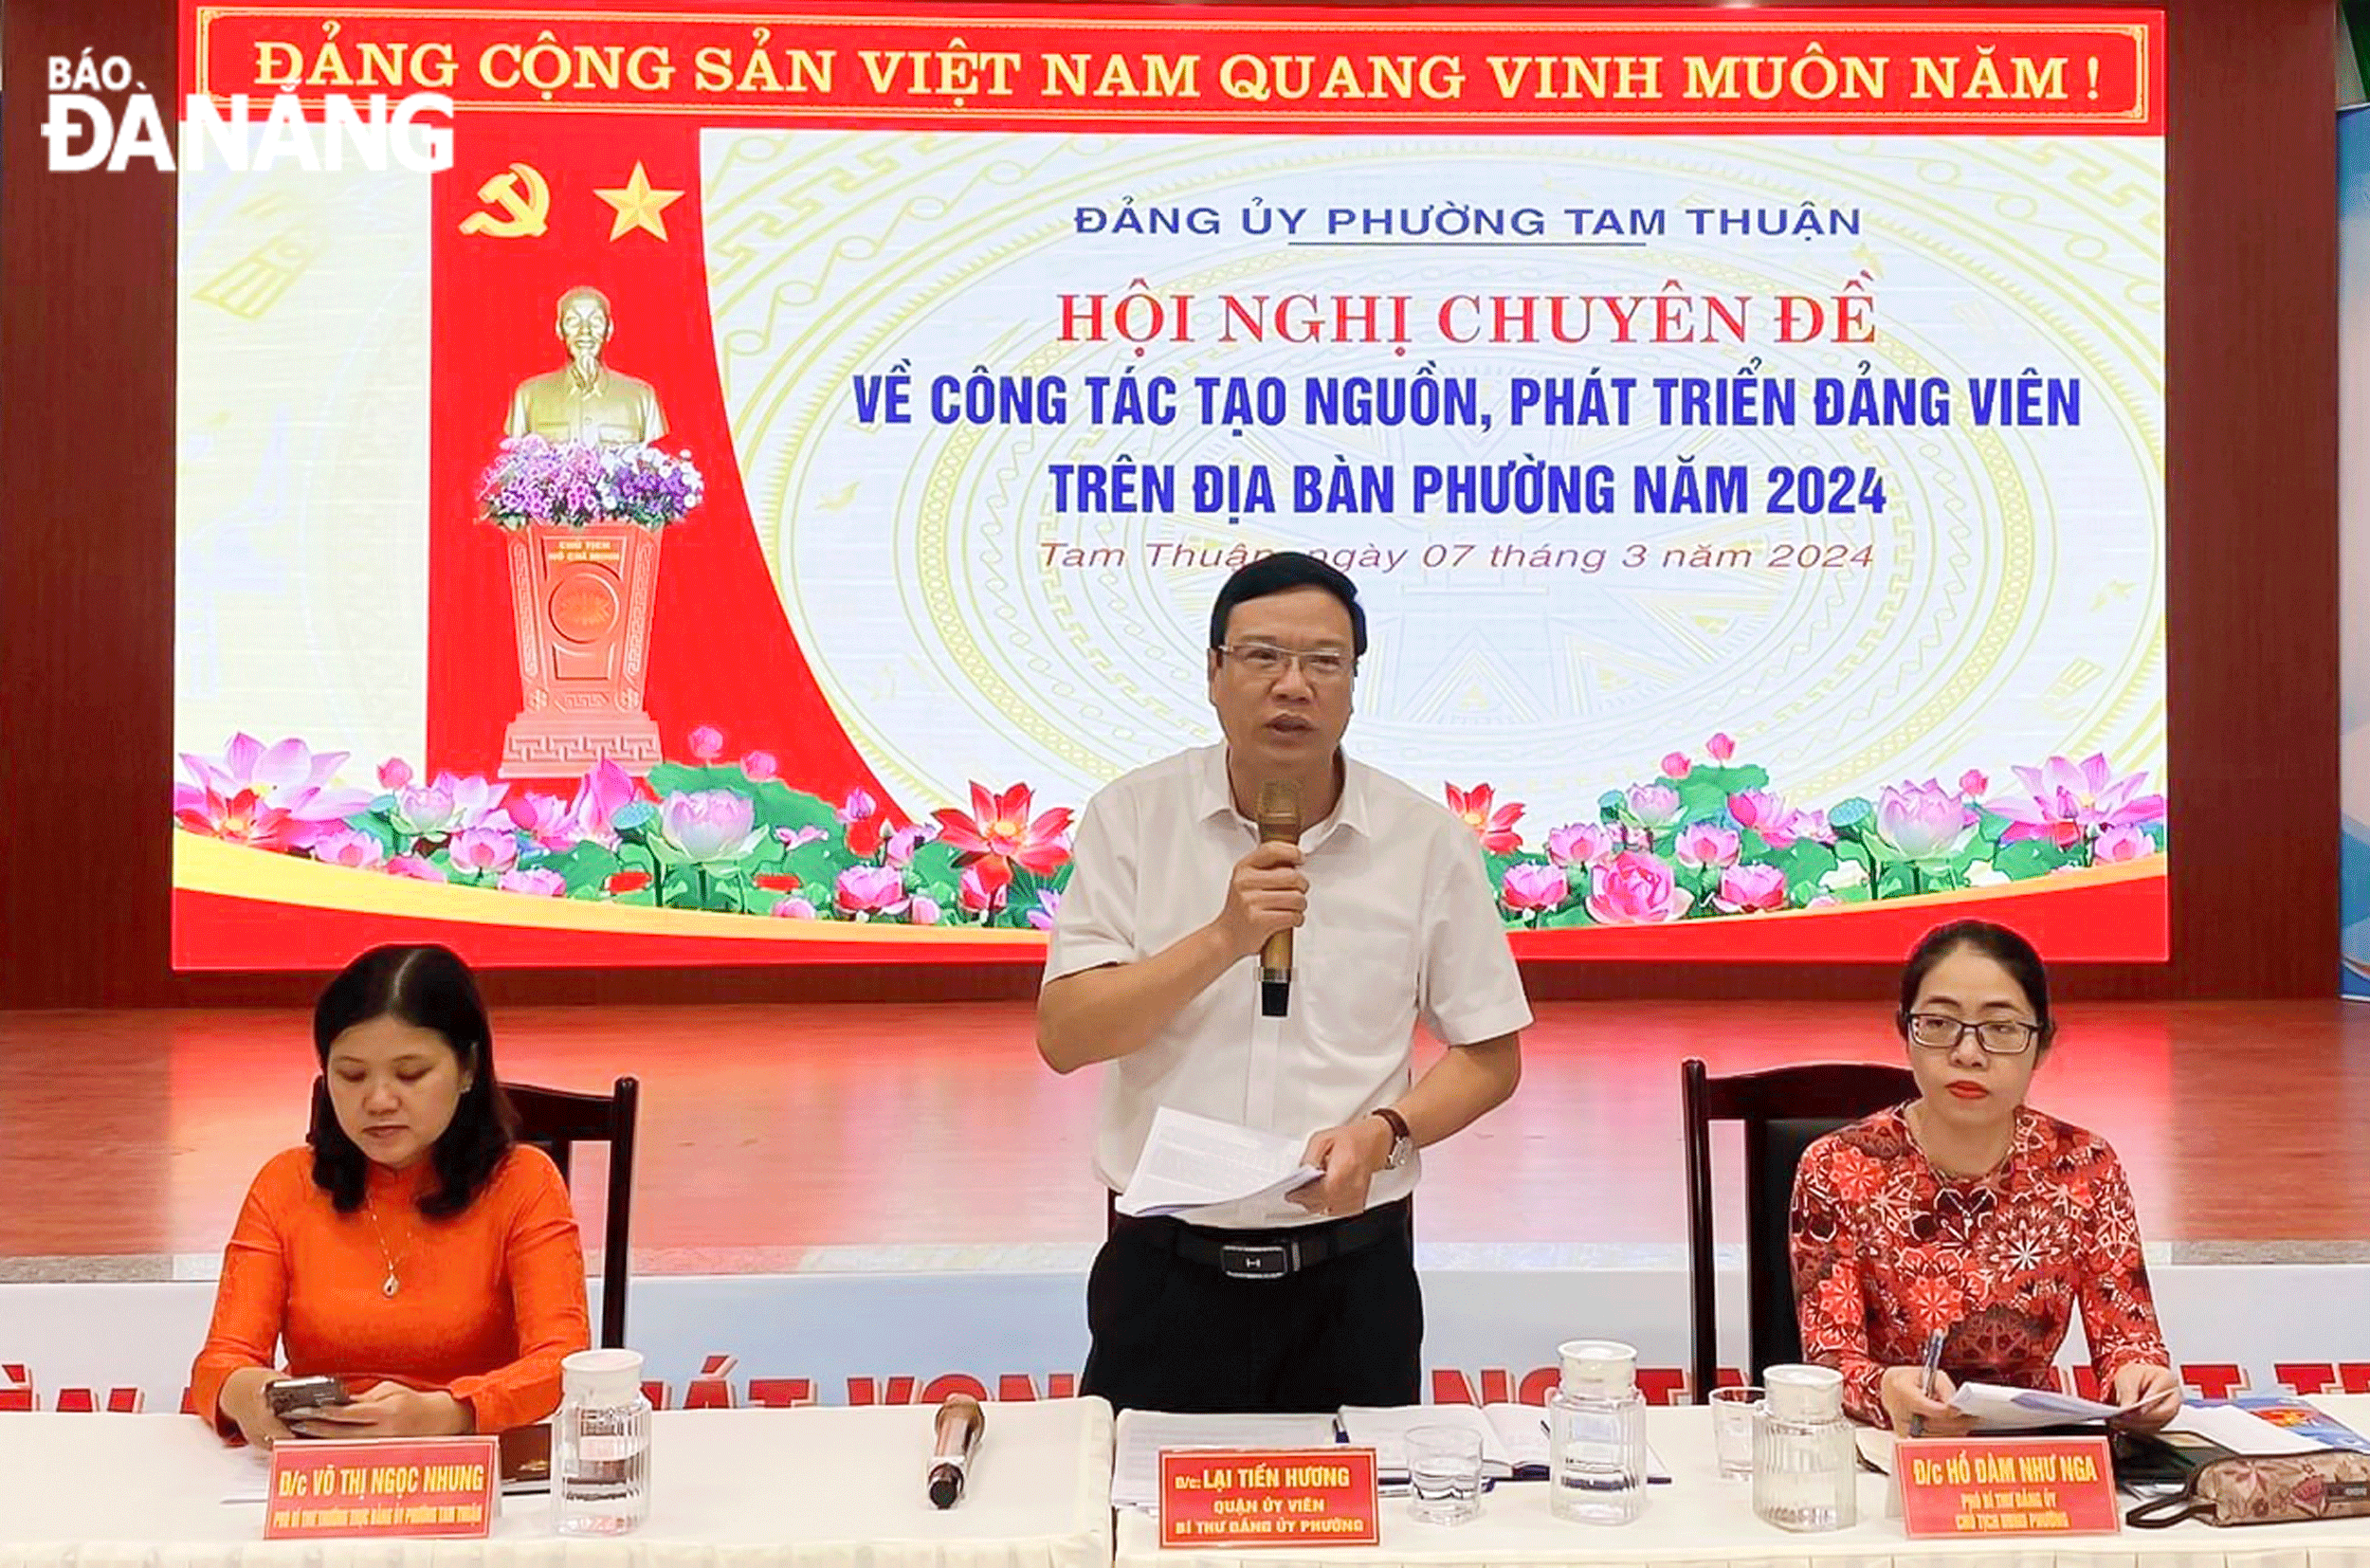 Đảng ủy phường Tam Thuận tổ chức hội nghị chuyên đề về công tác tạo nguồn, phát triển đảng viên  năm 2024. Ảnh: PV